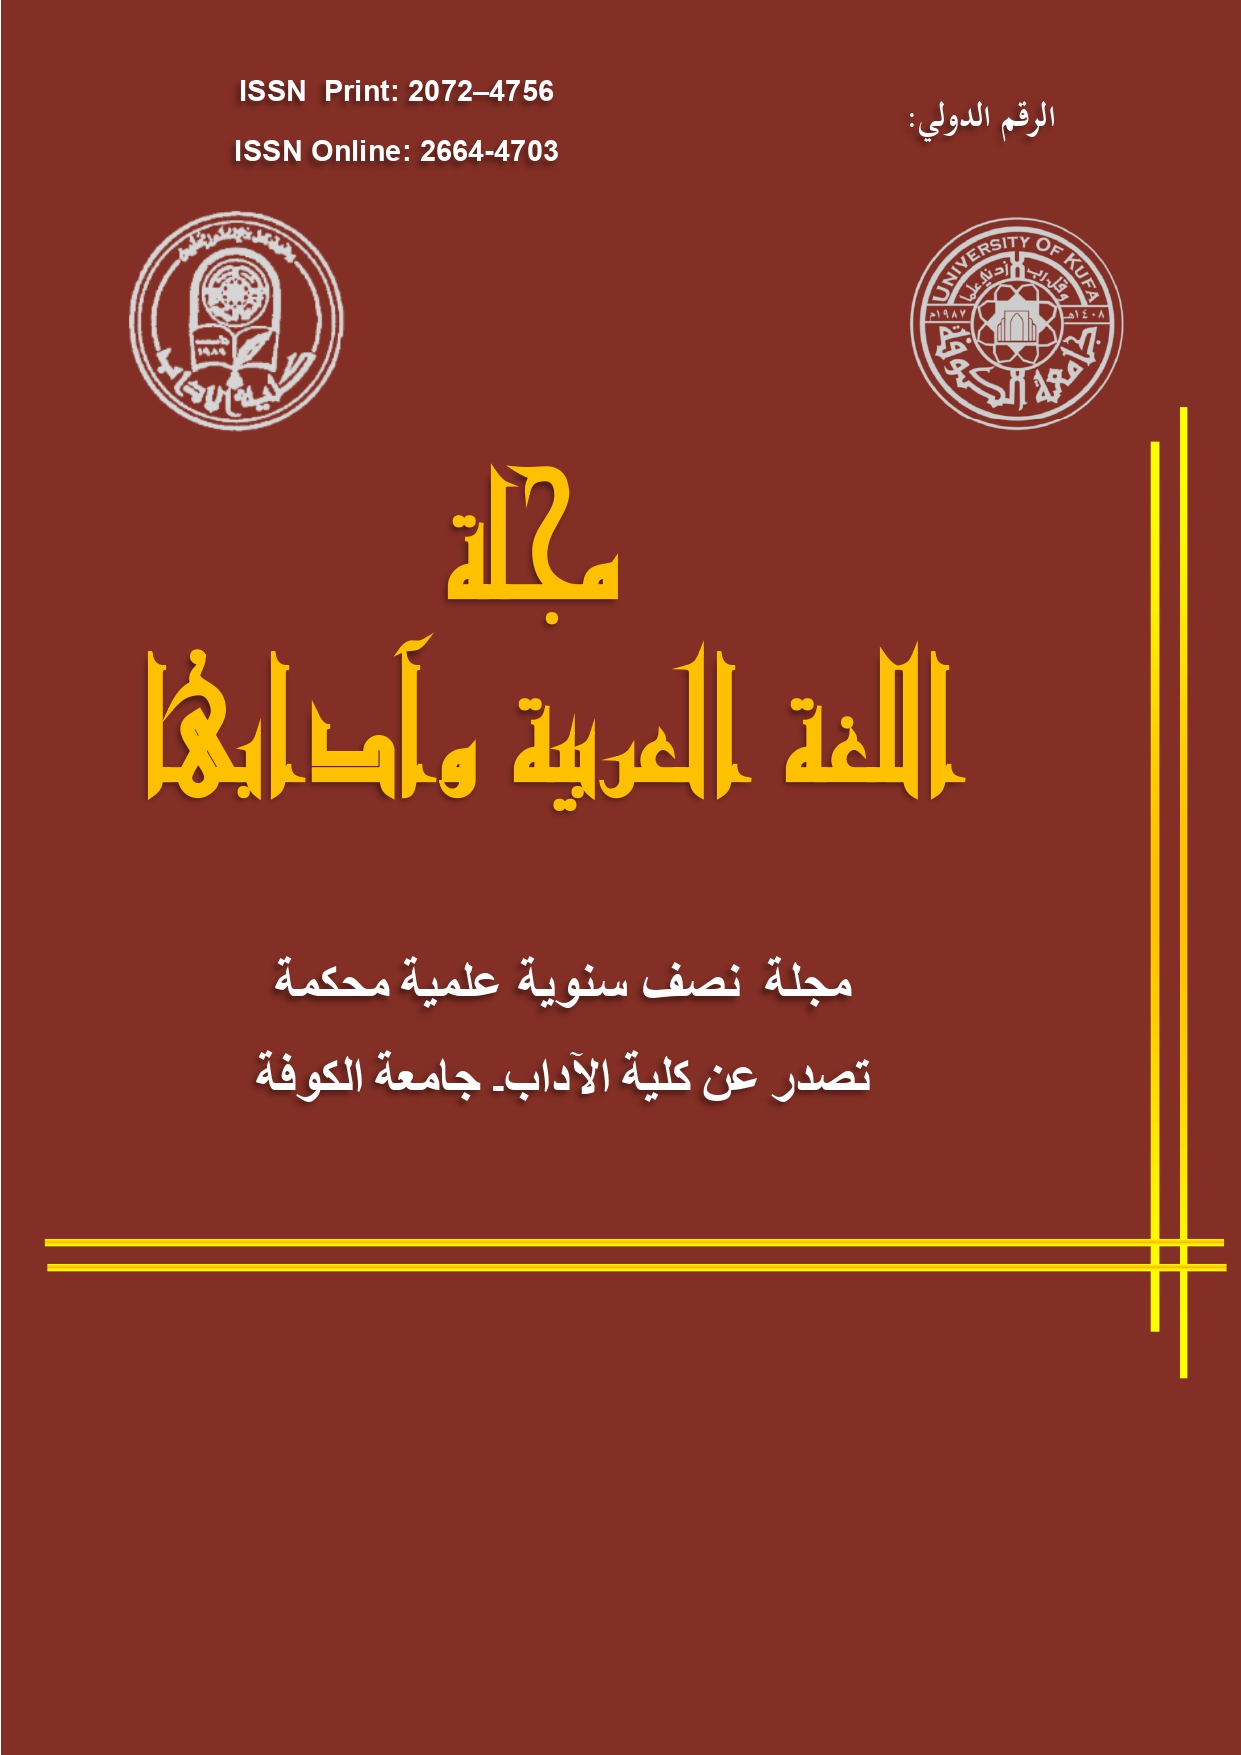 					معاينة مجلد 1 عدد 38: مجلة اللغة العربية وآدابها، ايلول 2023م
				